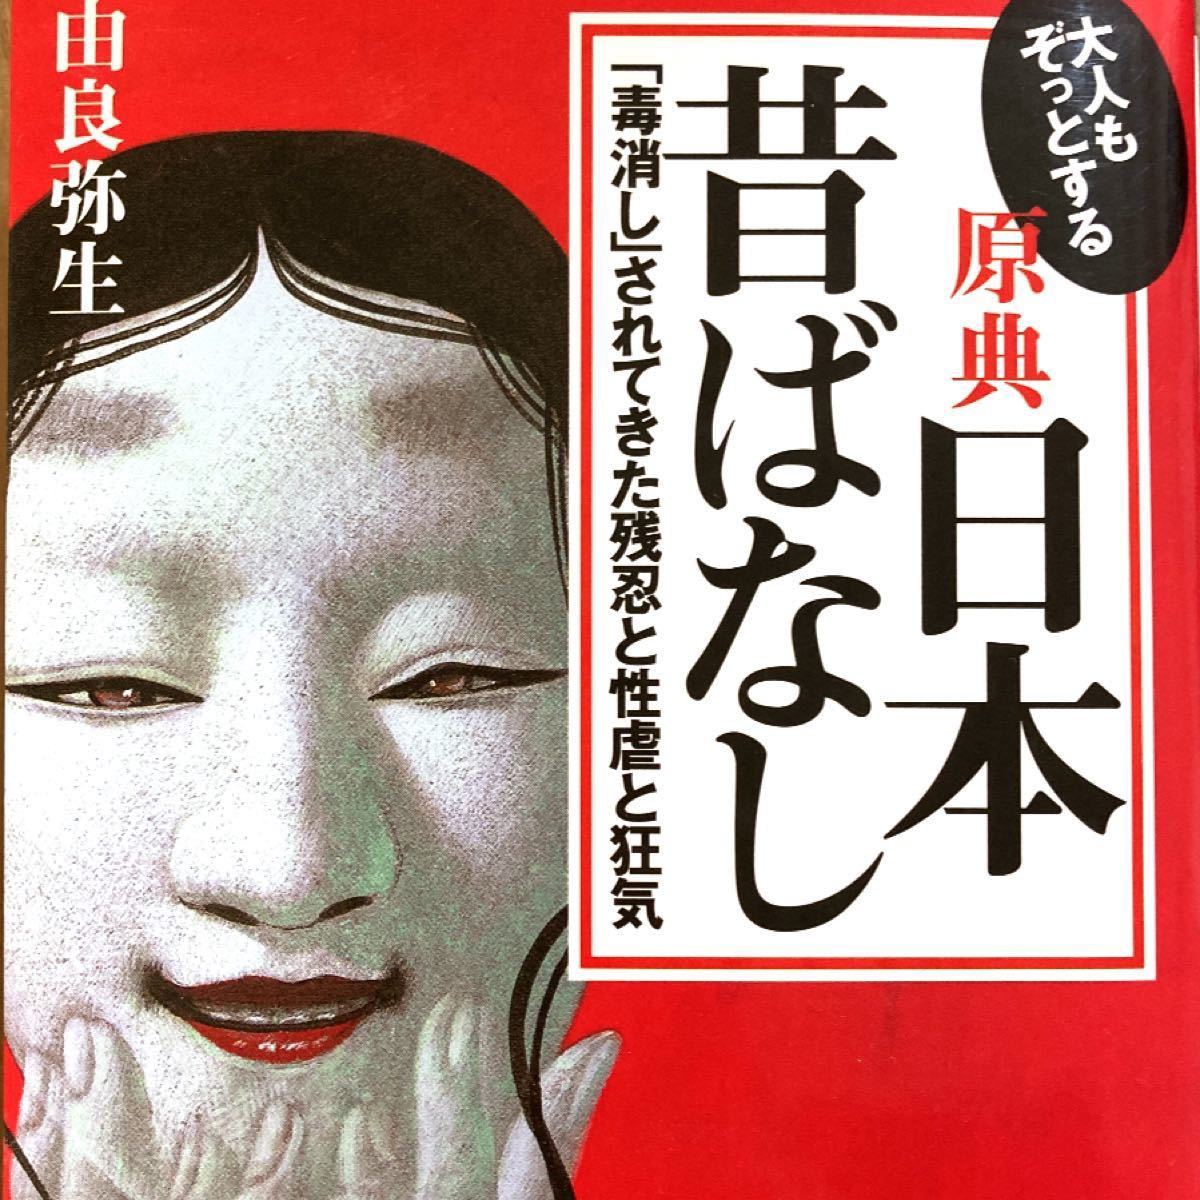 大人もゾッとする原典7「日本の昔ばなし」